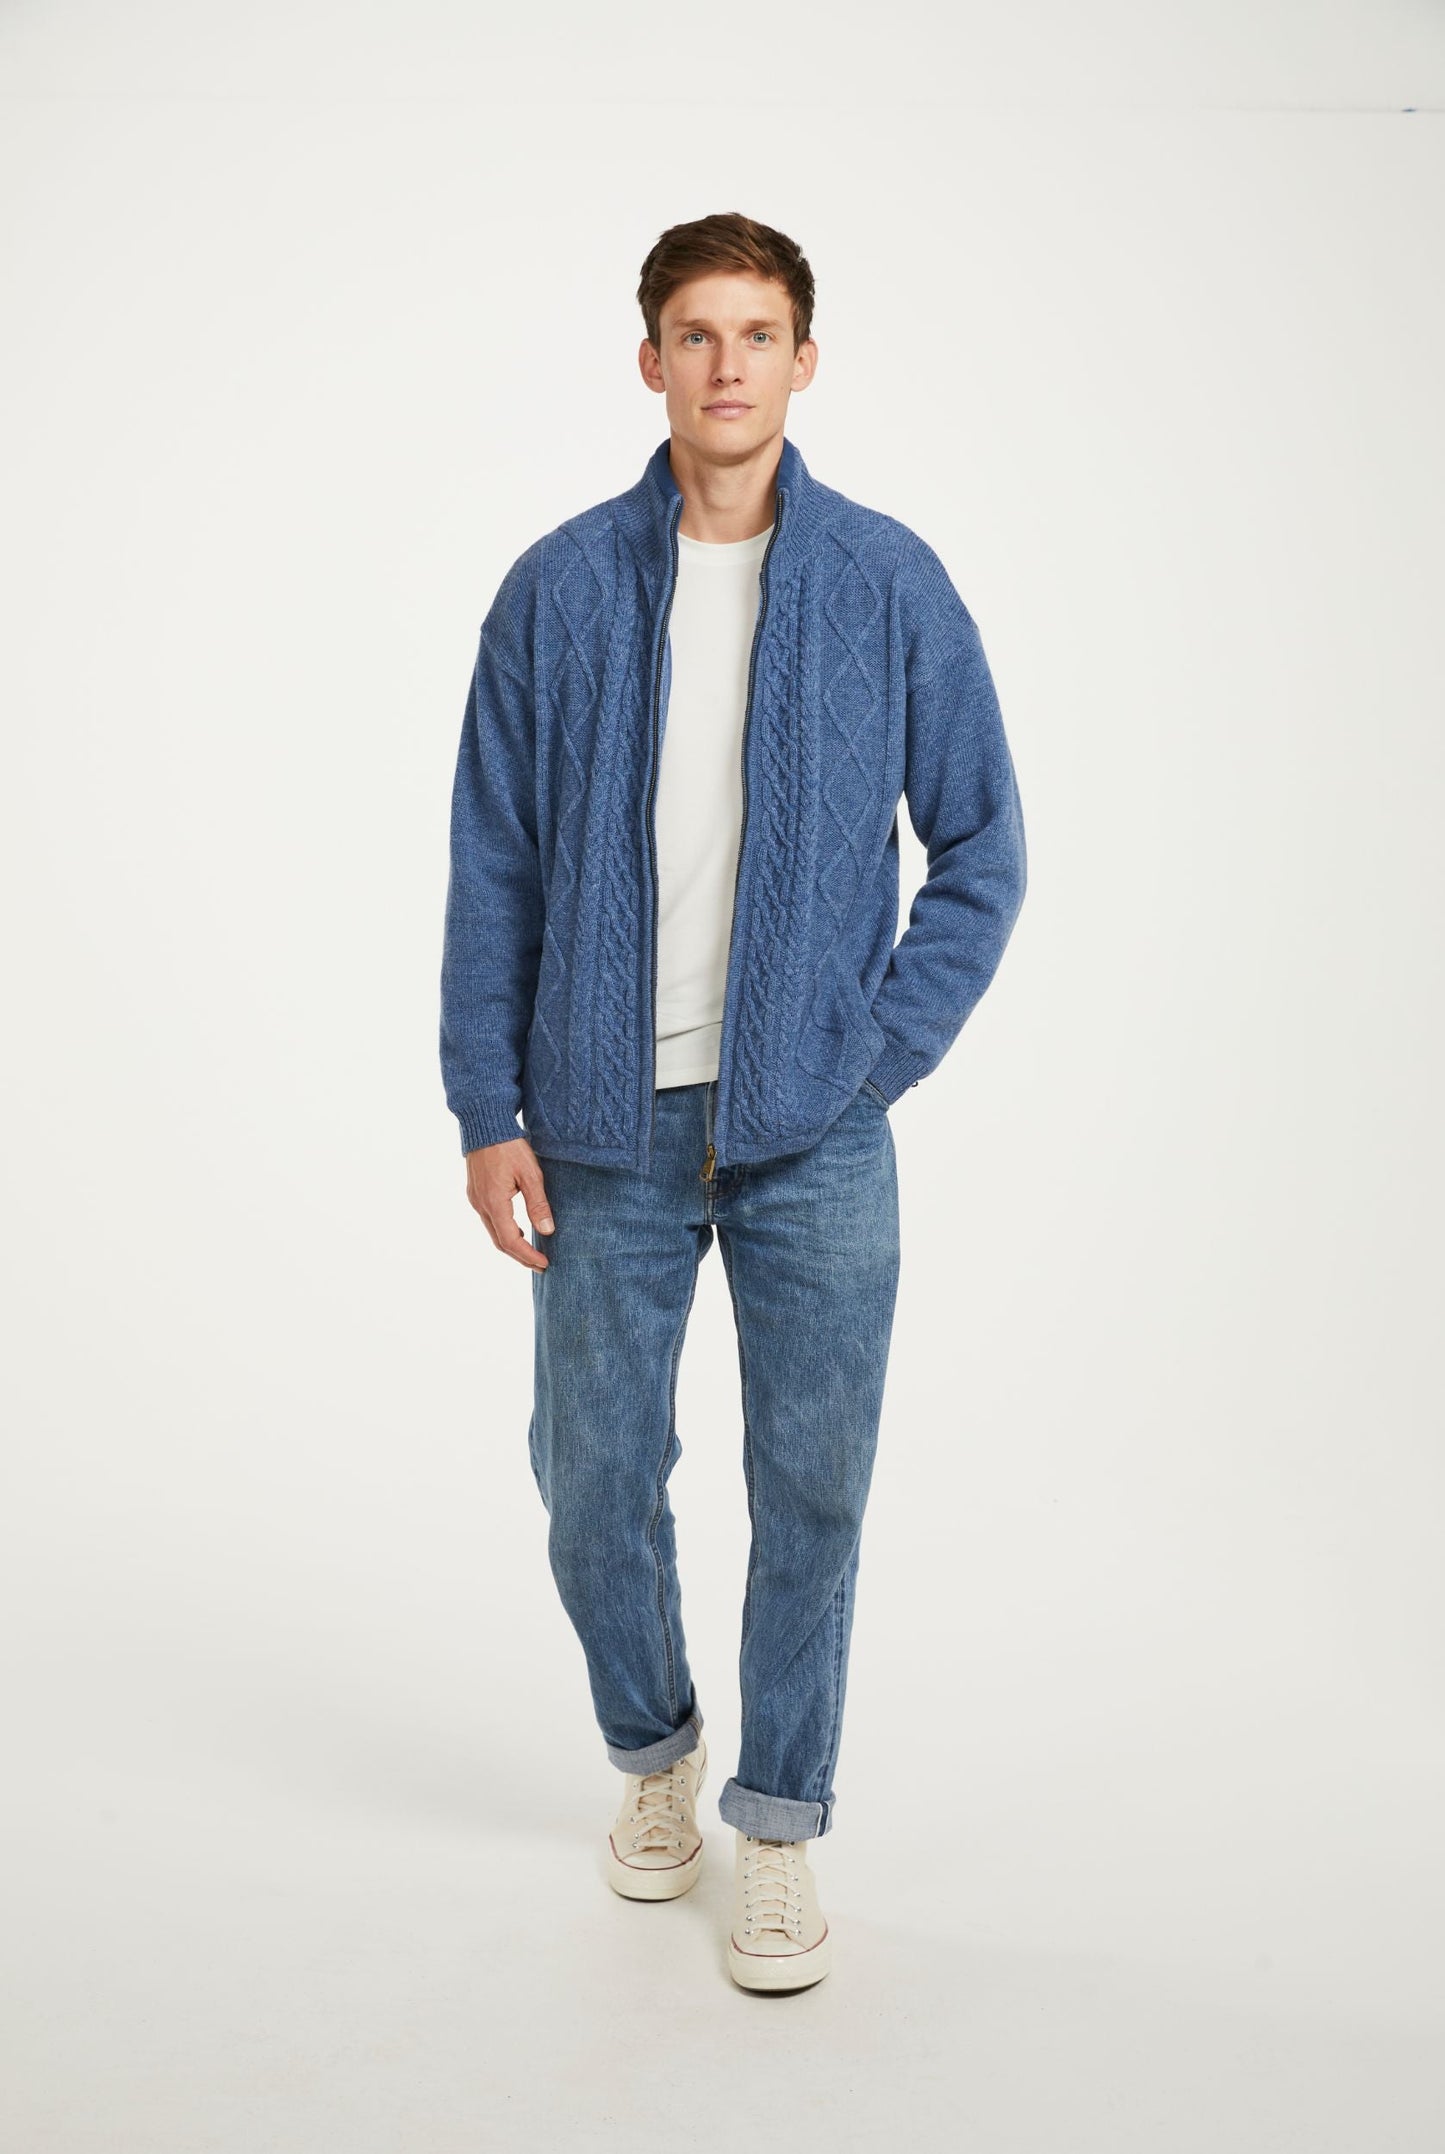 Farmleigh Lined Wool Mens Cardigan - Denim Blue